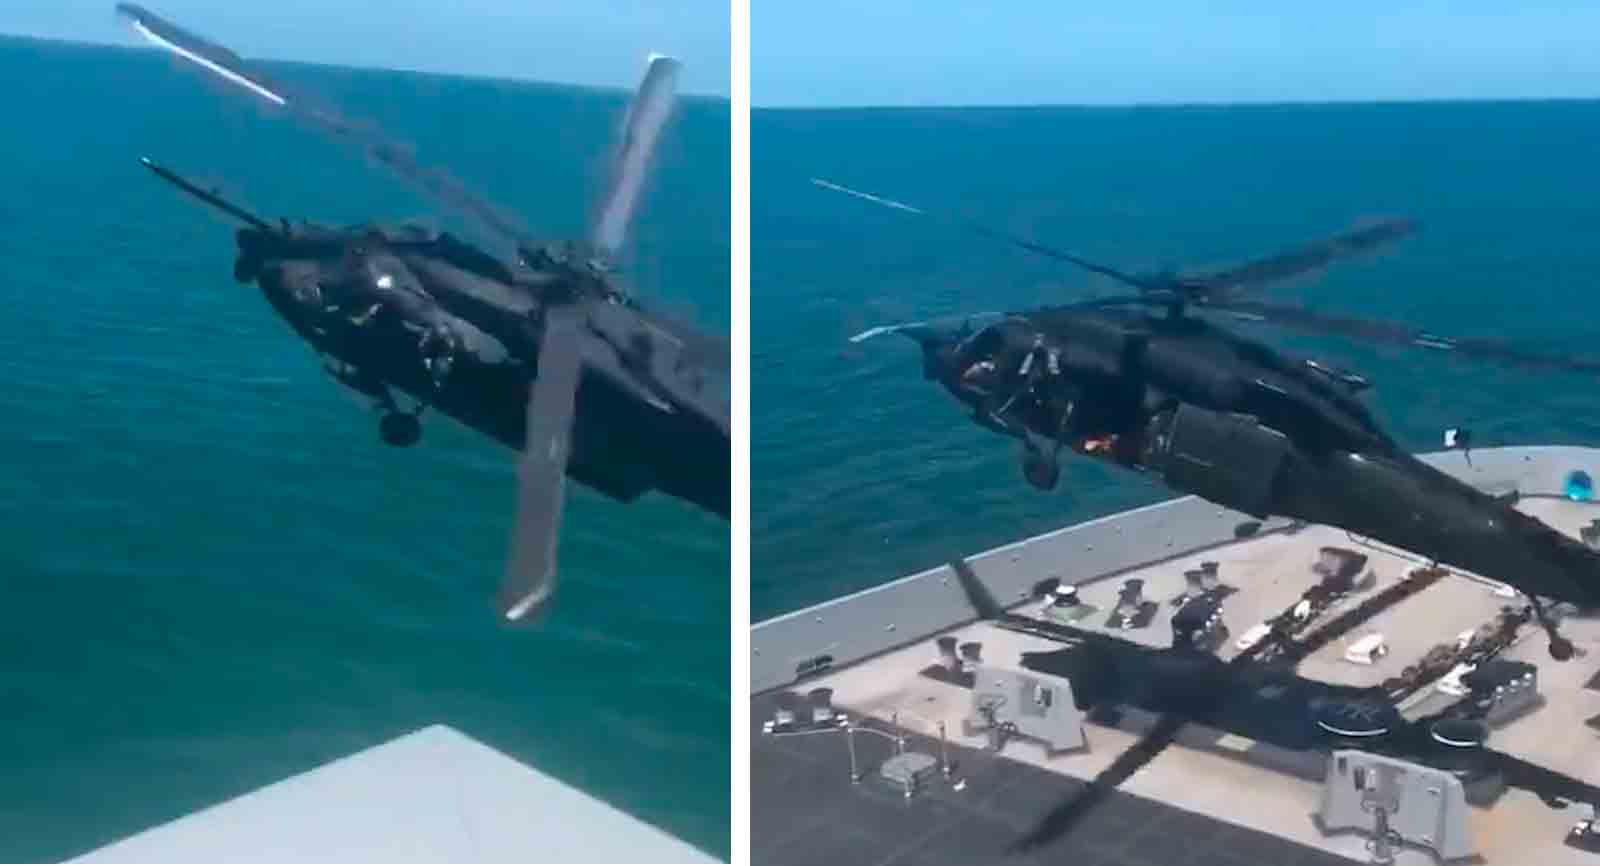 Hihetetlen videó mutatja be, hogy hogyan foglalják el és szállják meg a mozgó hajókat egy amerikai hadsereg helikopterrel. Fotó és videó: Twitteres reprodukció @stallhornlulul